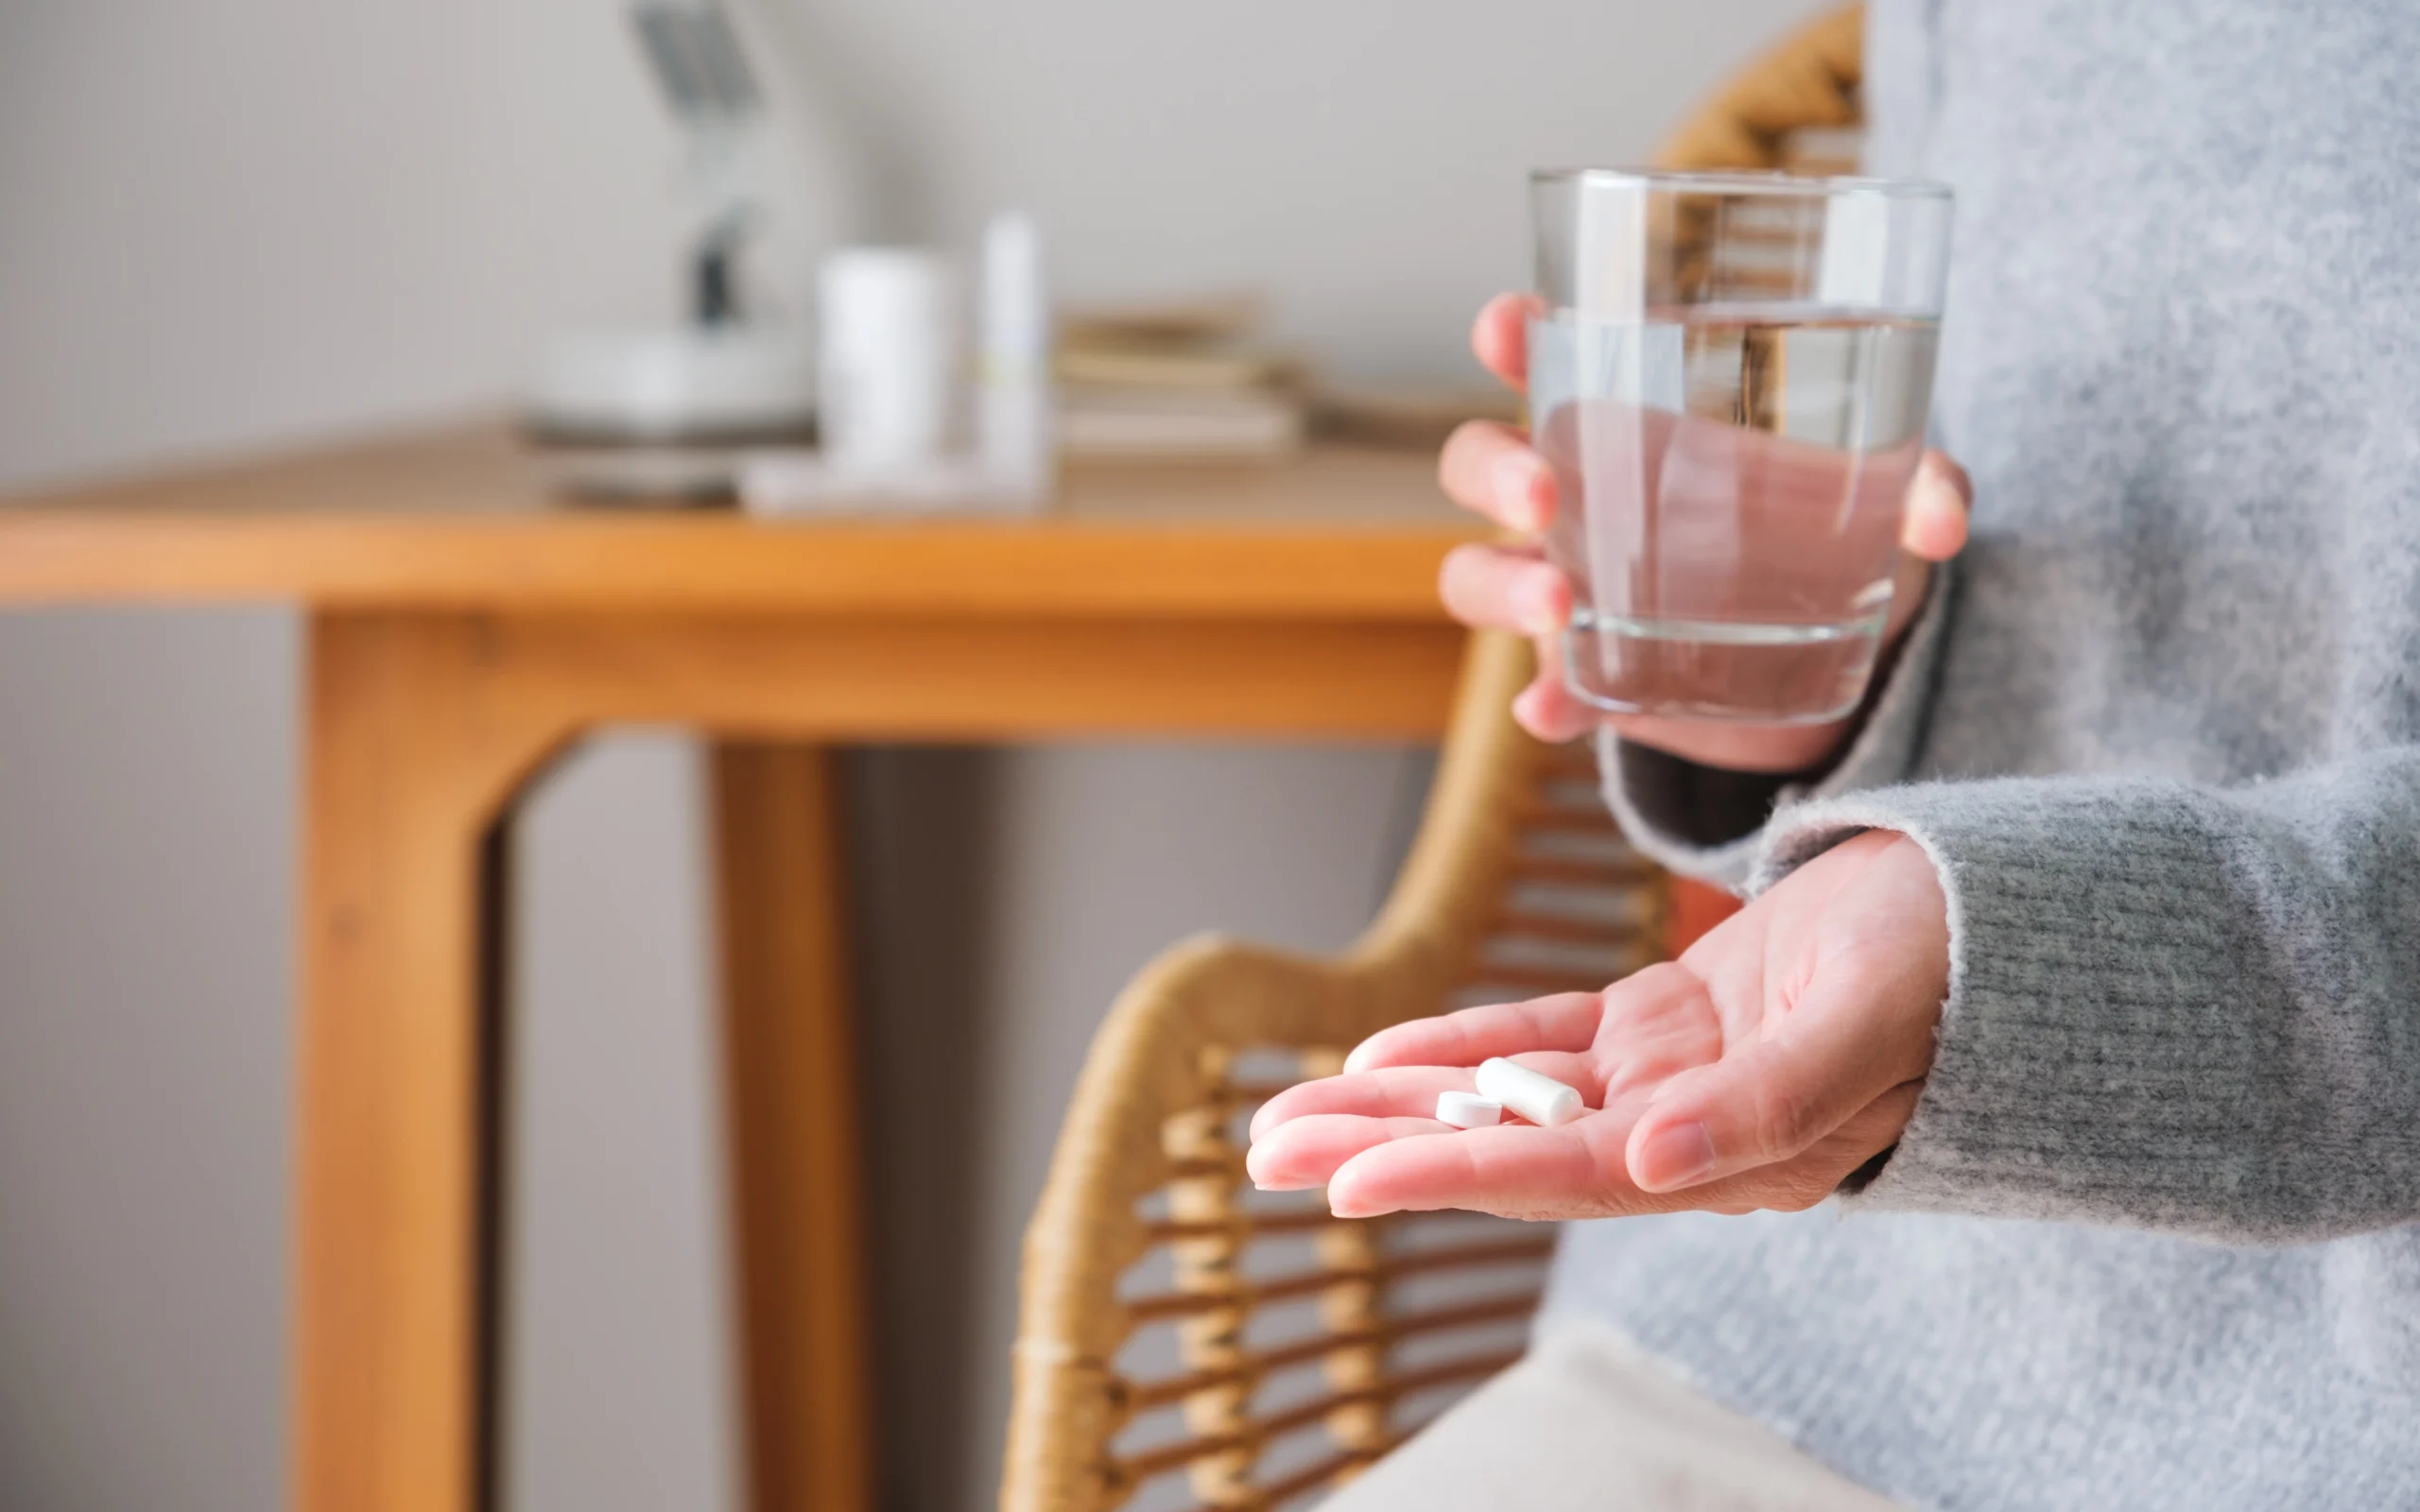 Probiotyk – przed czy po antybiotyku? Kiedy brać probiotyki – rano czy wieczorem? Kobieta trzyma w dłoniach 2 kapsułki probiotyku i szklankę wody.